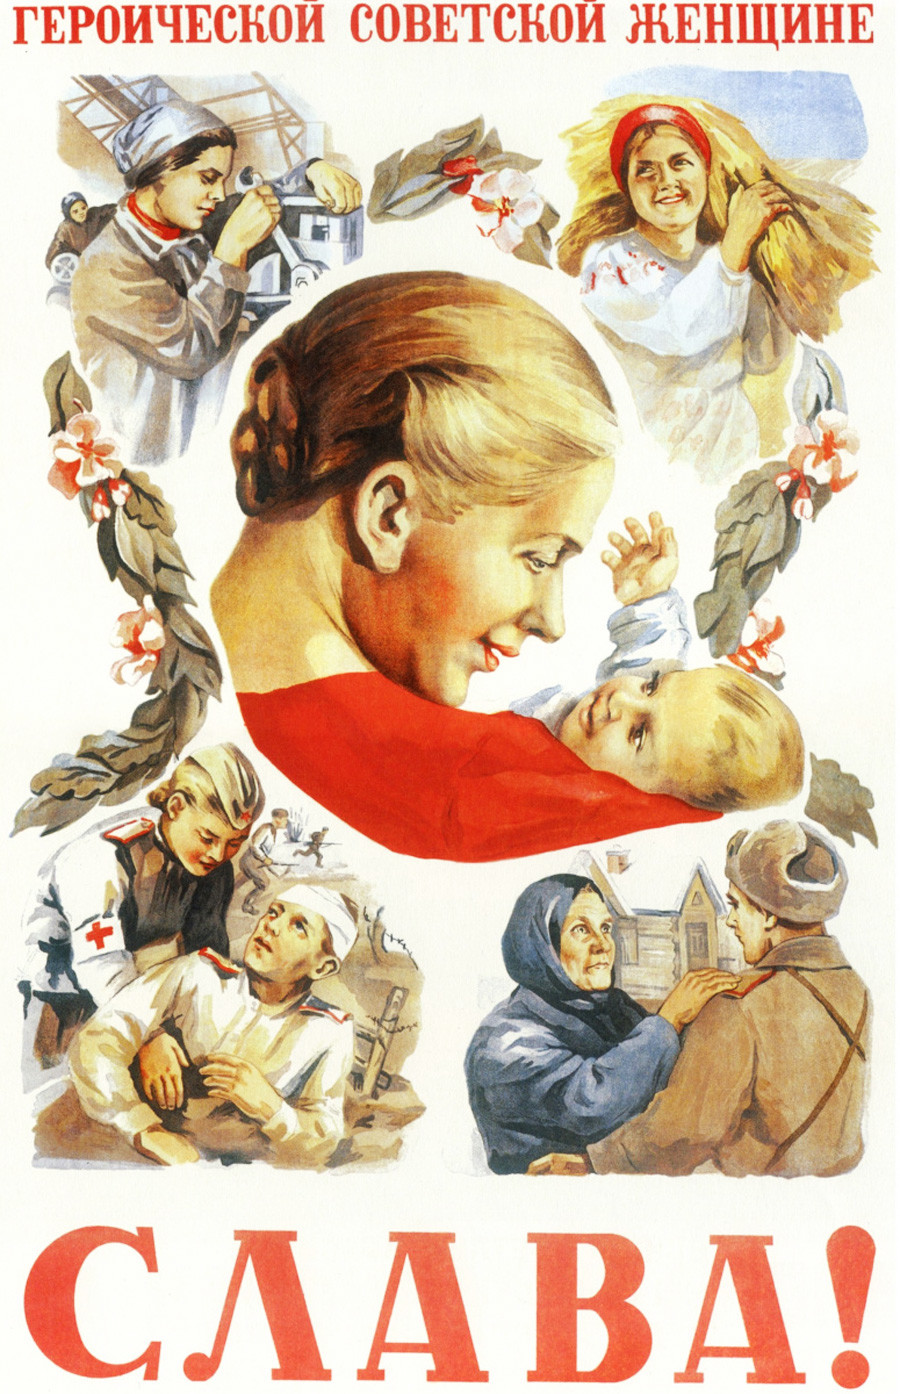 6. Gloria a la heroica mujer soviética.